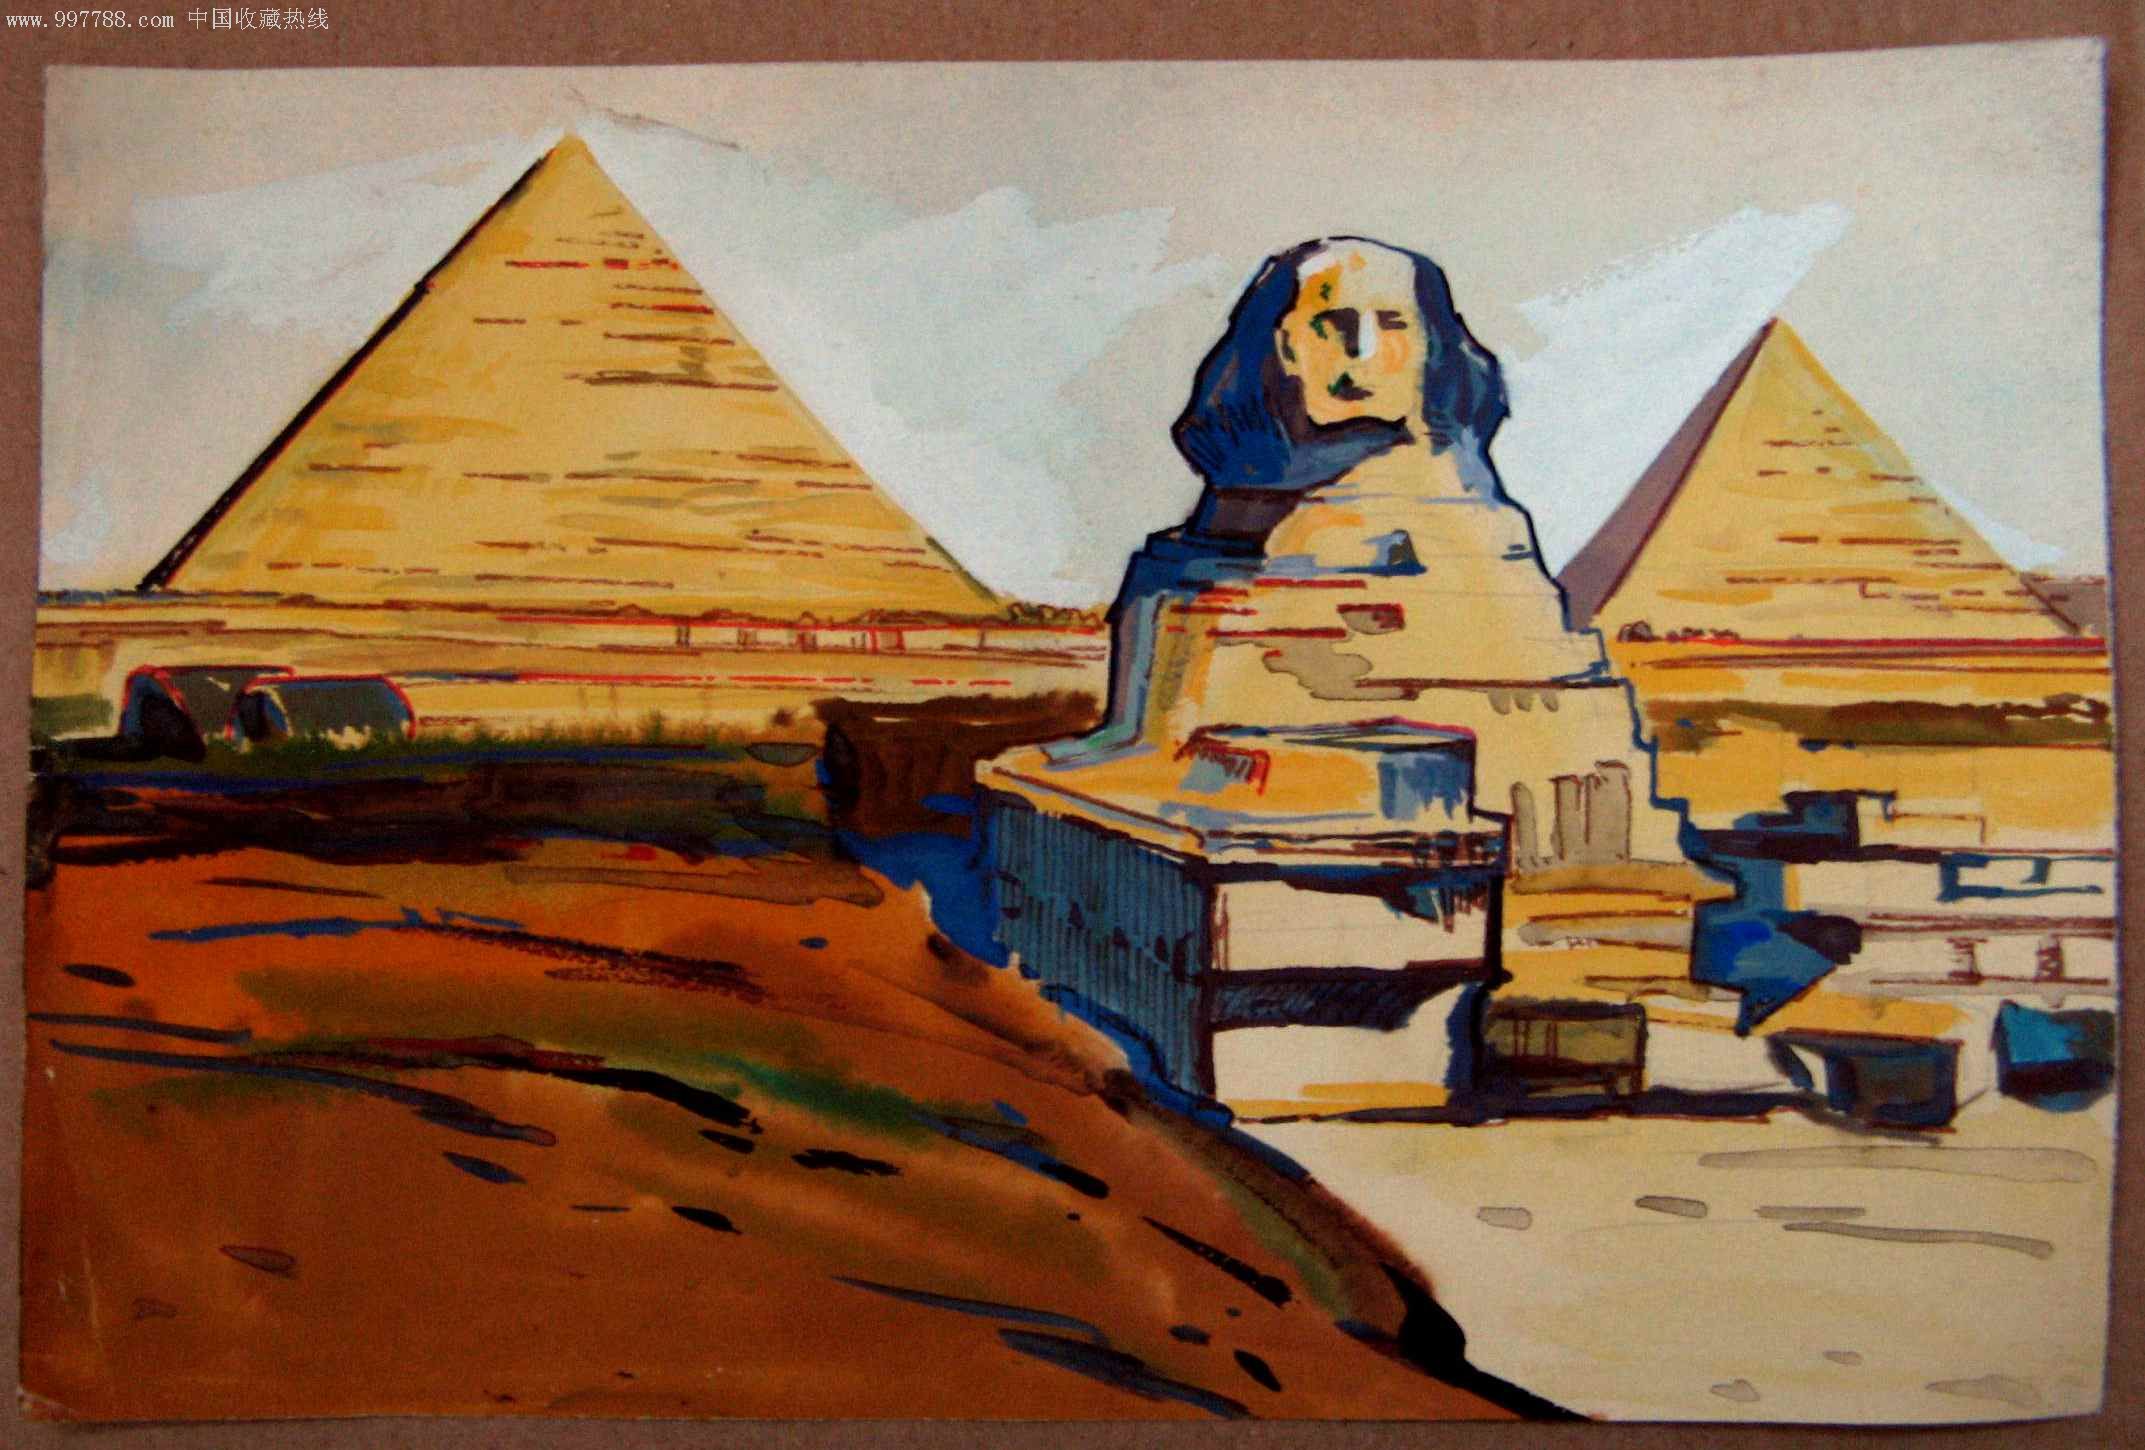 近16开水粉画原作:金字塔狮面人身像